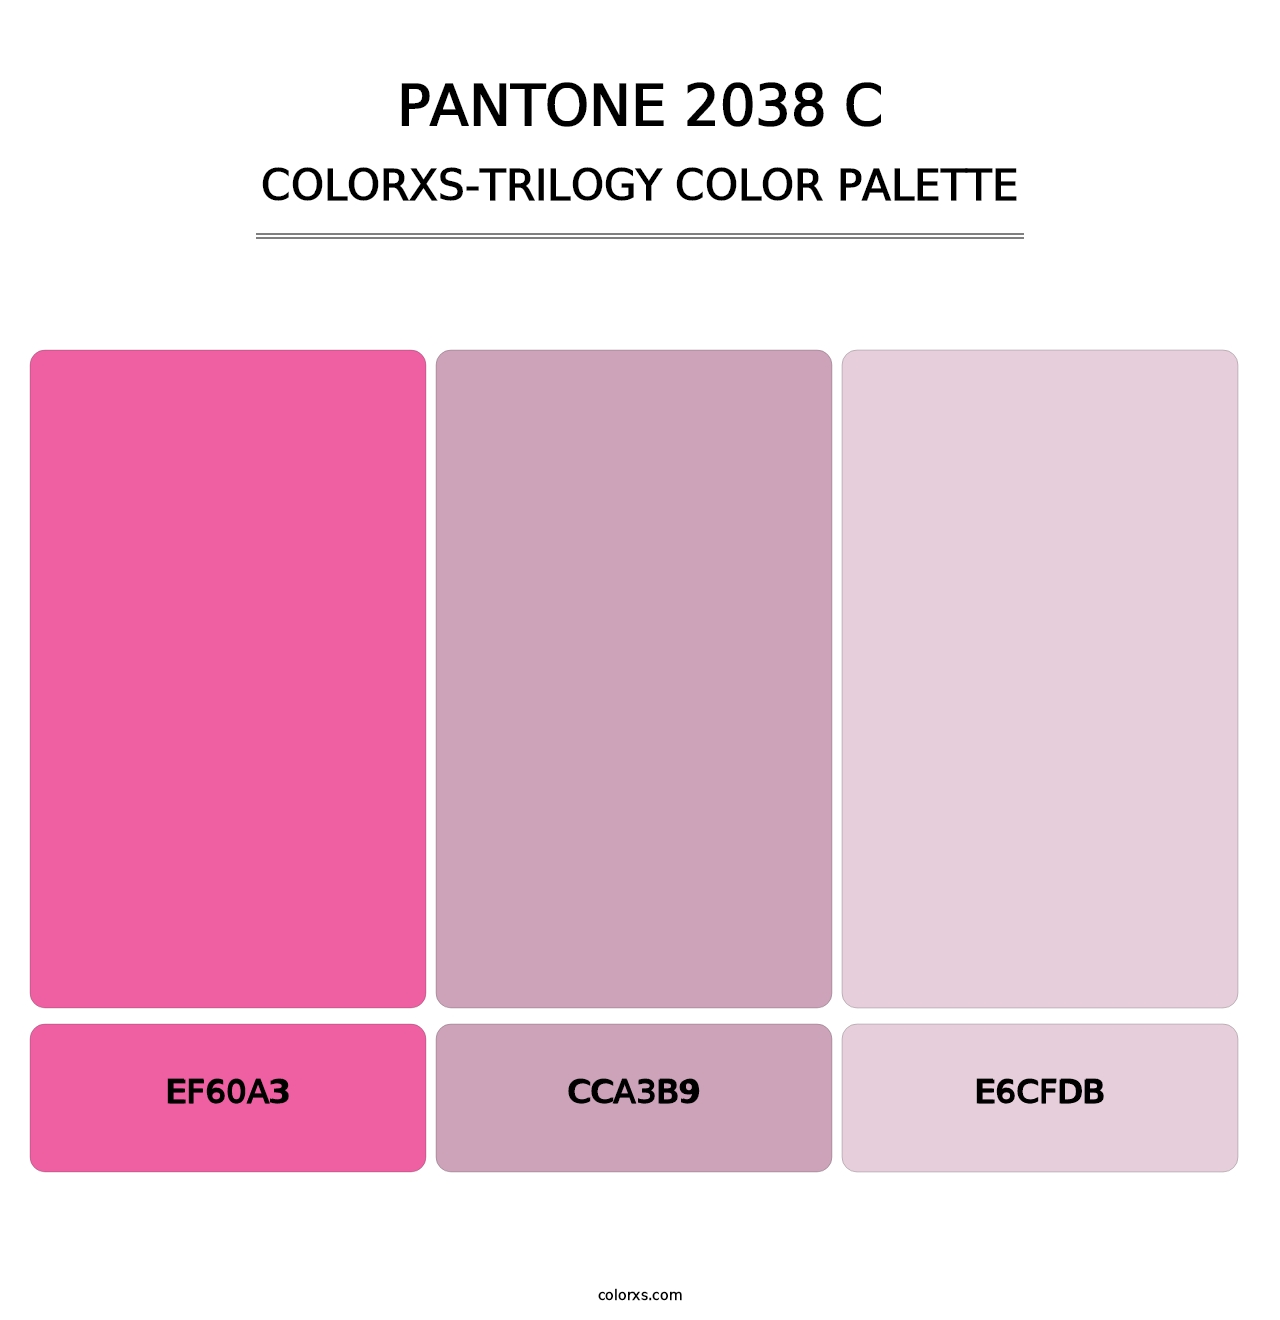 PANTONE 2038 C - Colorxs Trilogy Palette